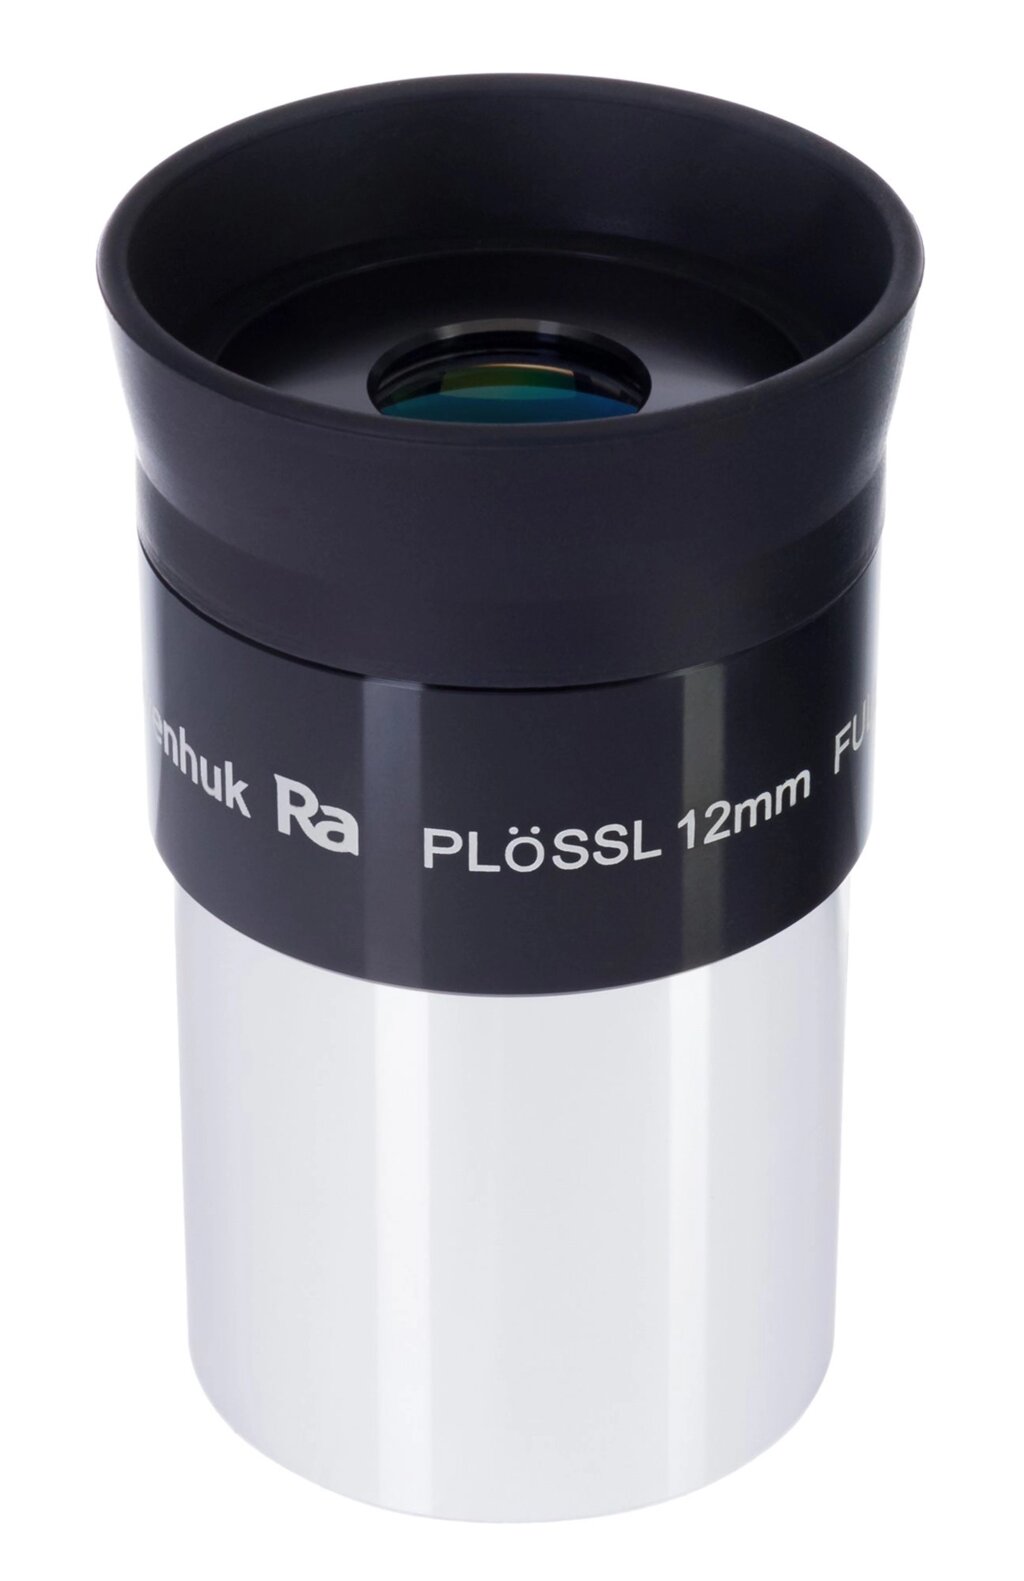 Окуляр Levenhuk Plössl 12 мм, 1,25" от компании ООО "АССЕРВИС" лабораторное оборудование и весы по низким ценам. - фото 1